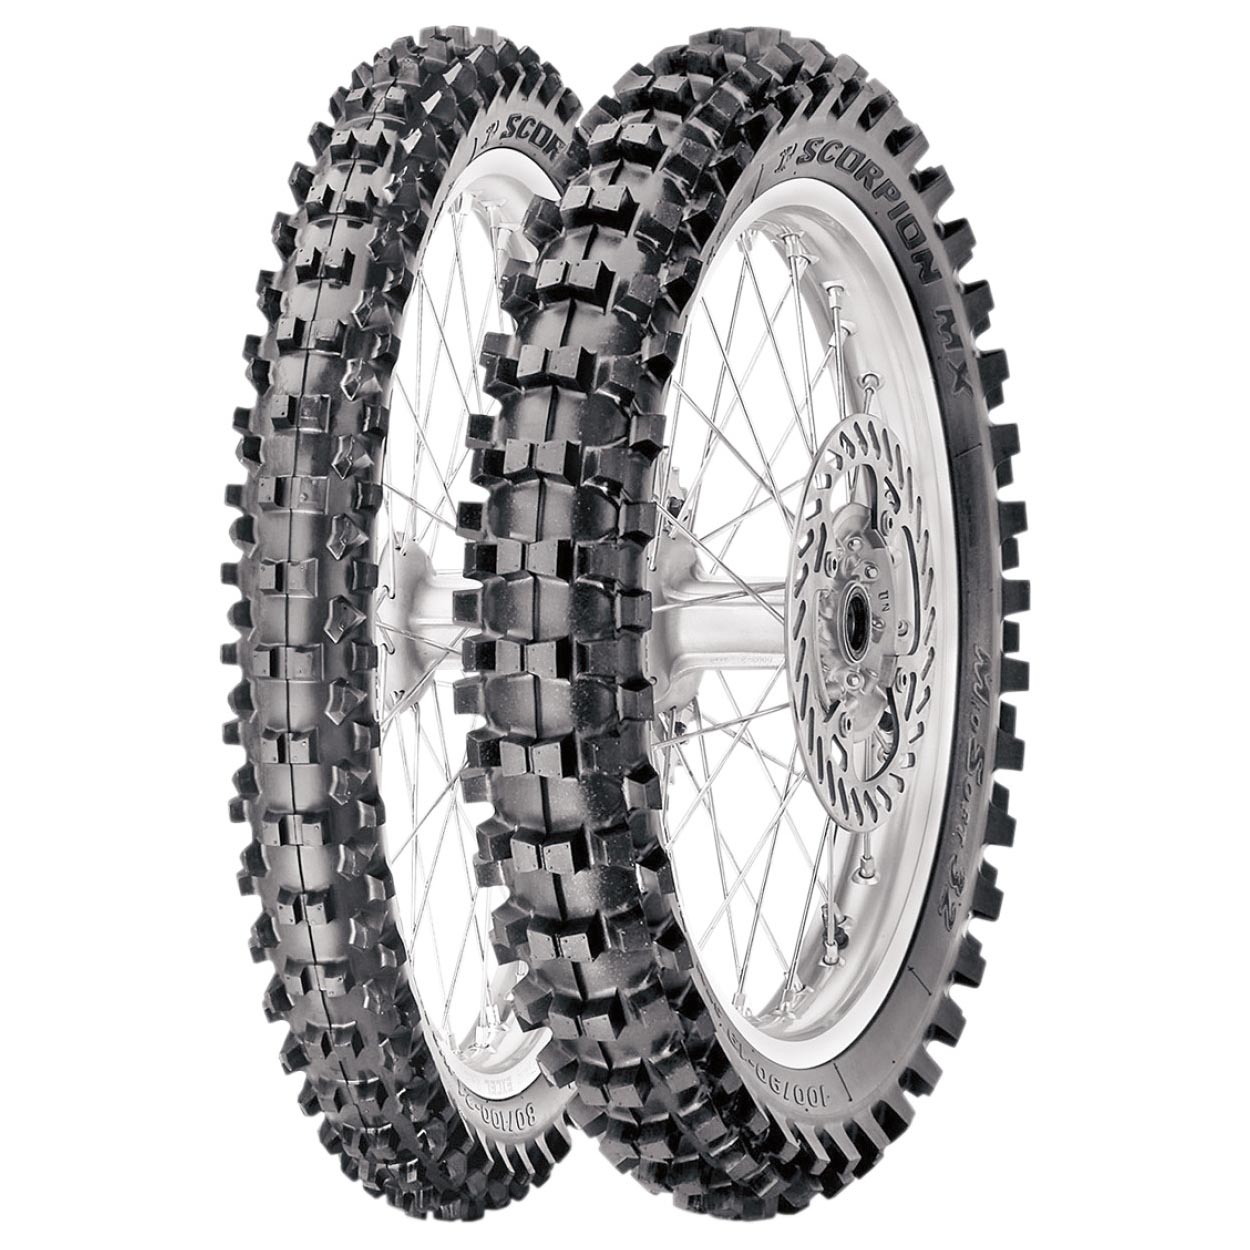 Pirelli's Scorpion MX 32 motocross tyre